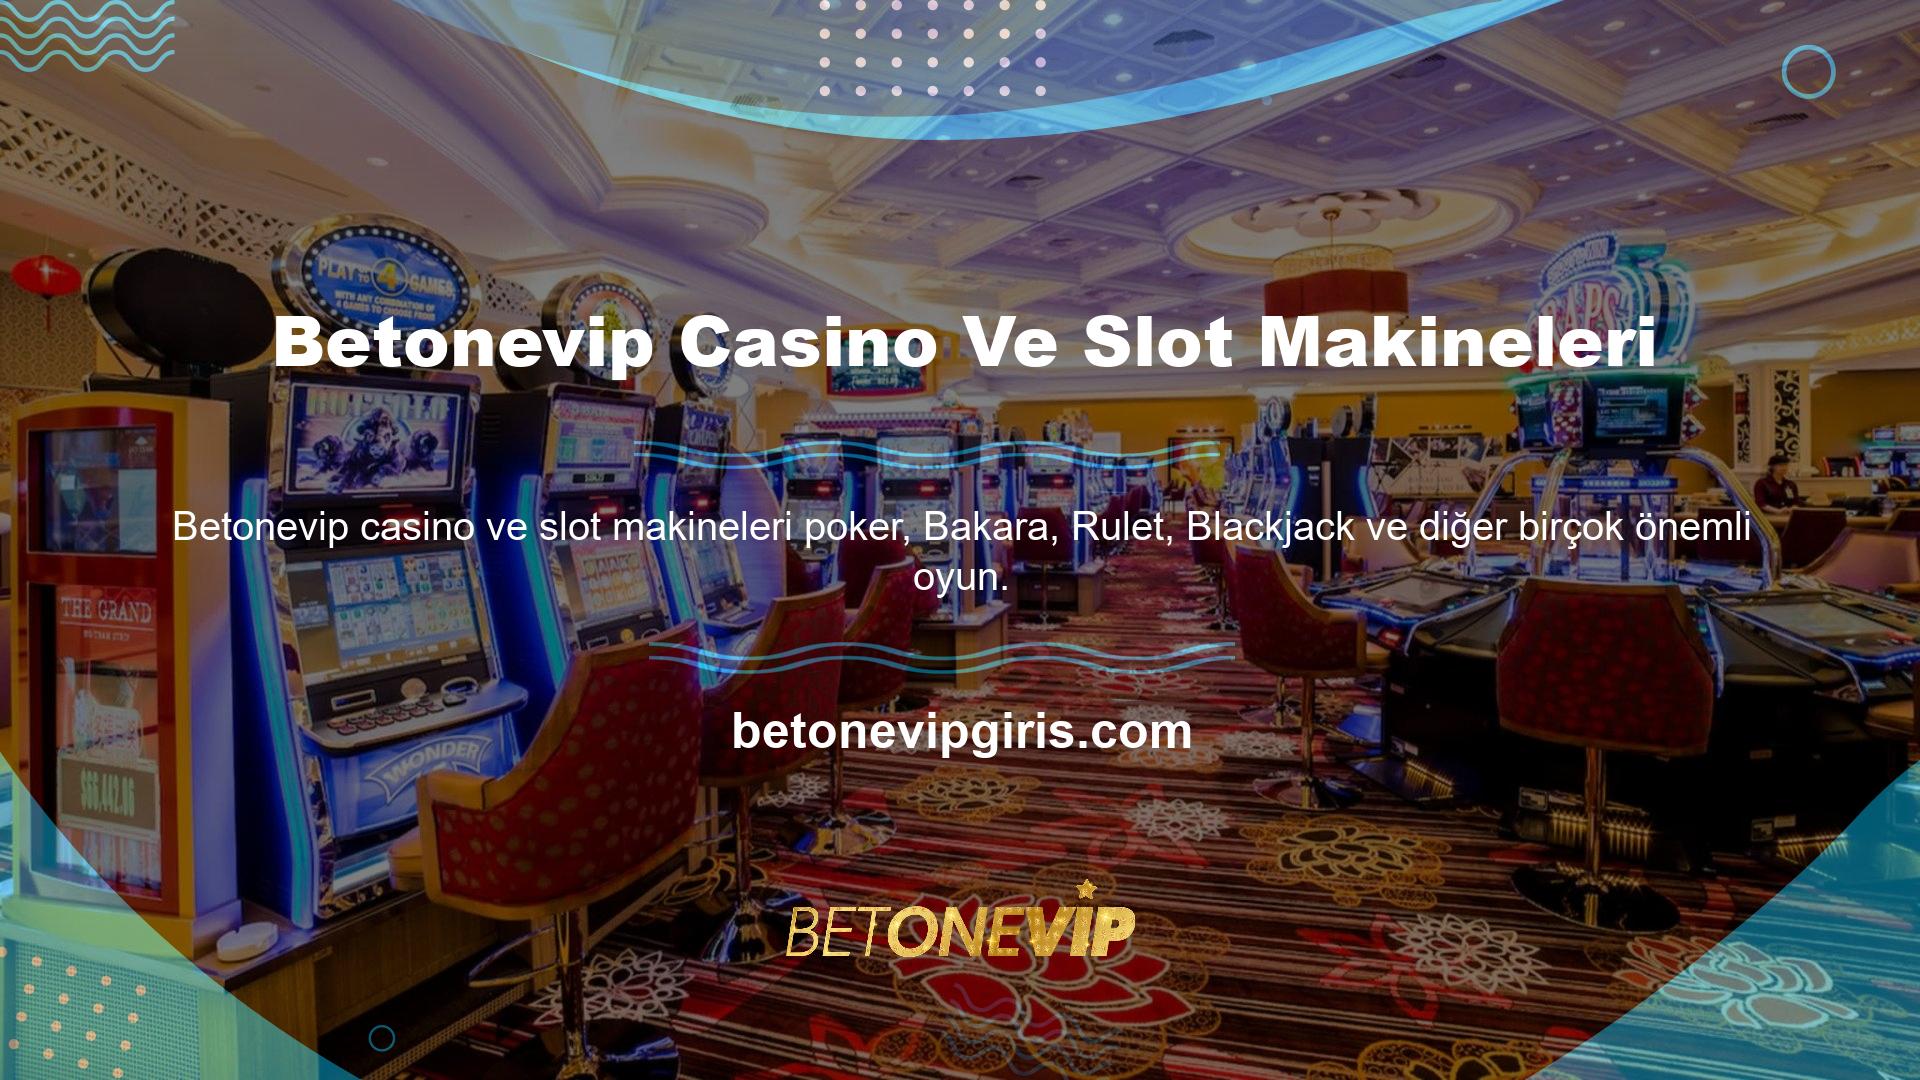 Her biri Betonevip casino alanında yer alacağı için sorunsuz çalışacak ve kullanıcılar sundukları imkanlara göre canlı bahis ekipmanlarını kolayca tanıtma imkanına sahip olacaklardır